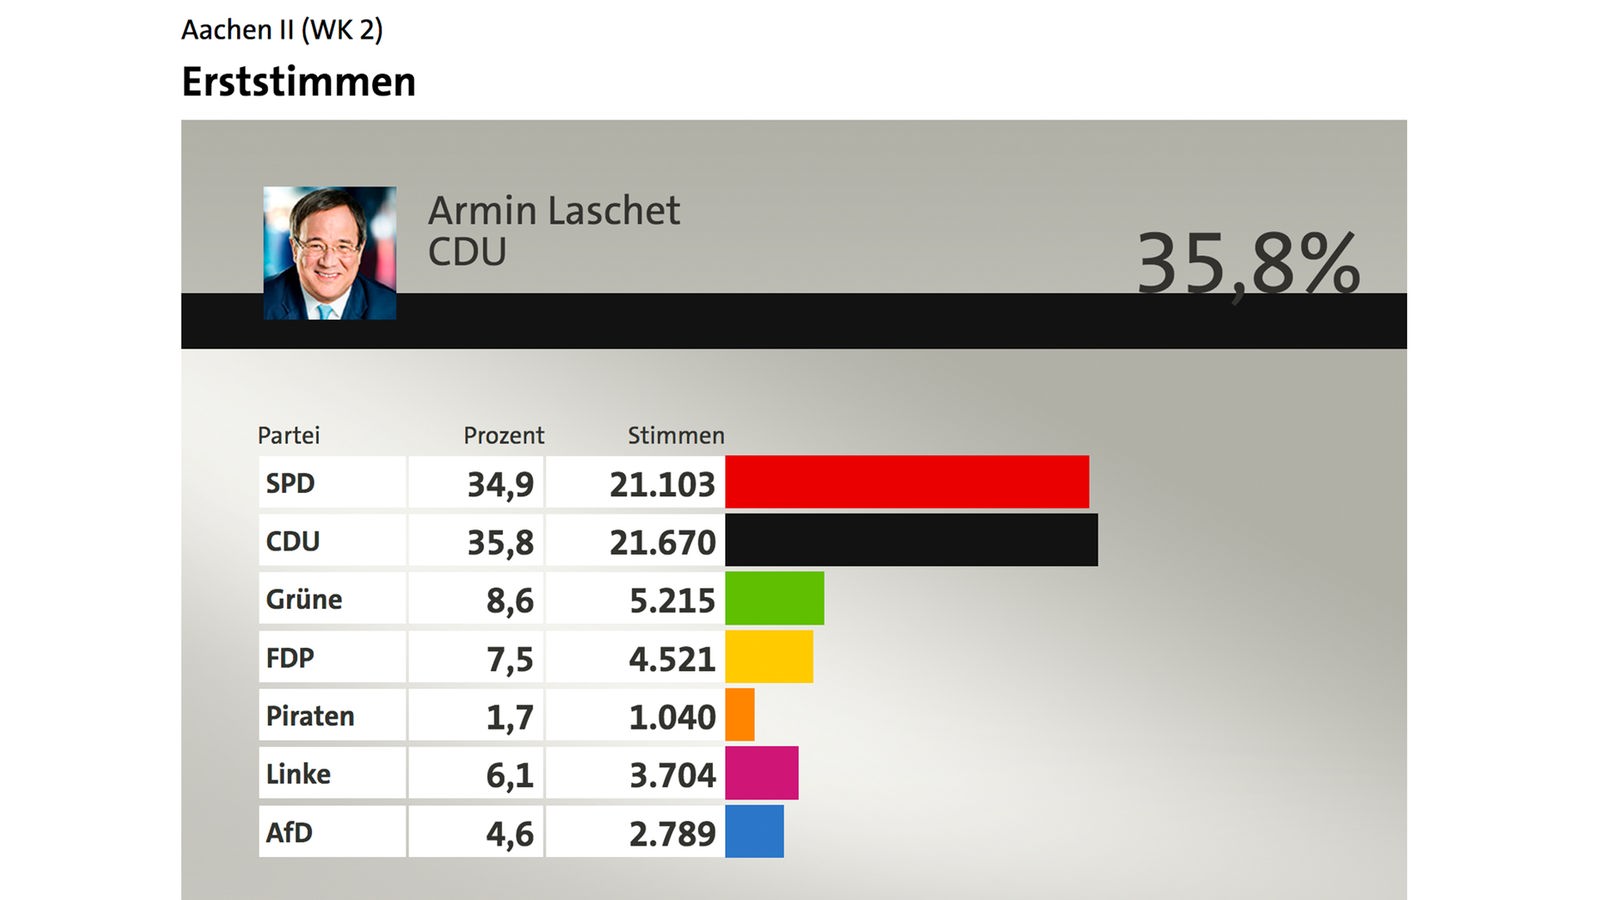 Armin Laschet, CDU, Erststimmen